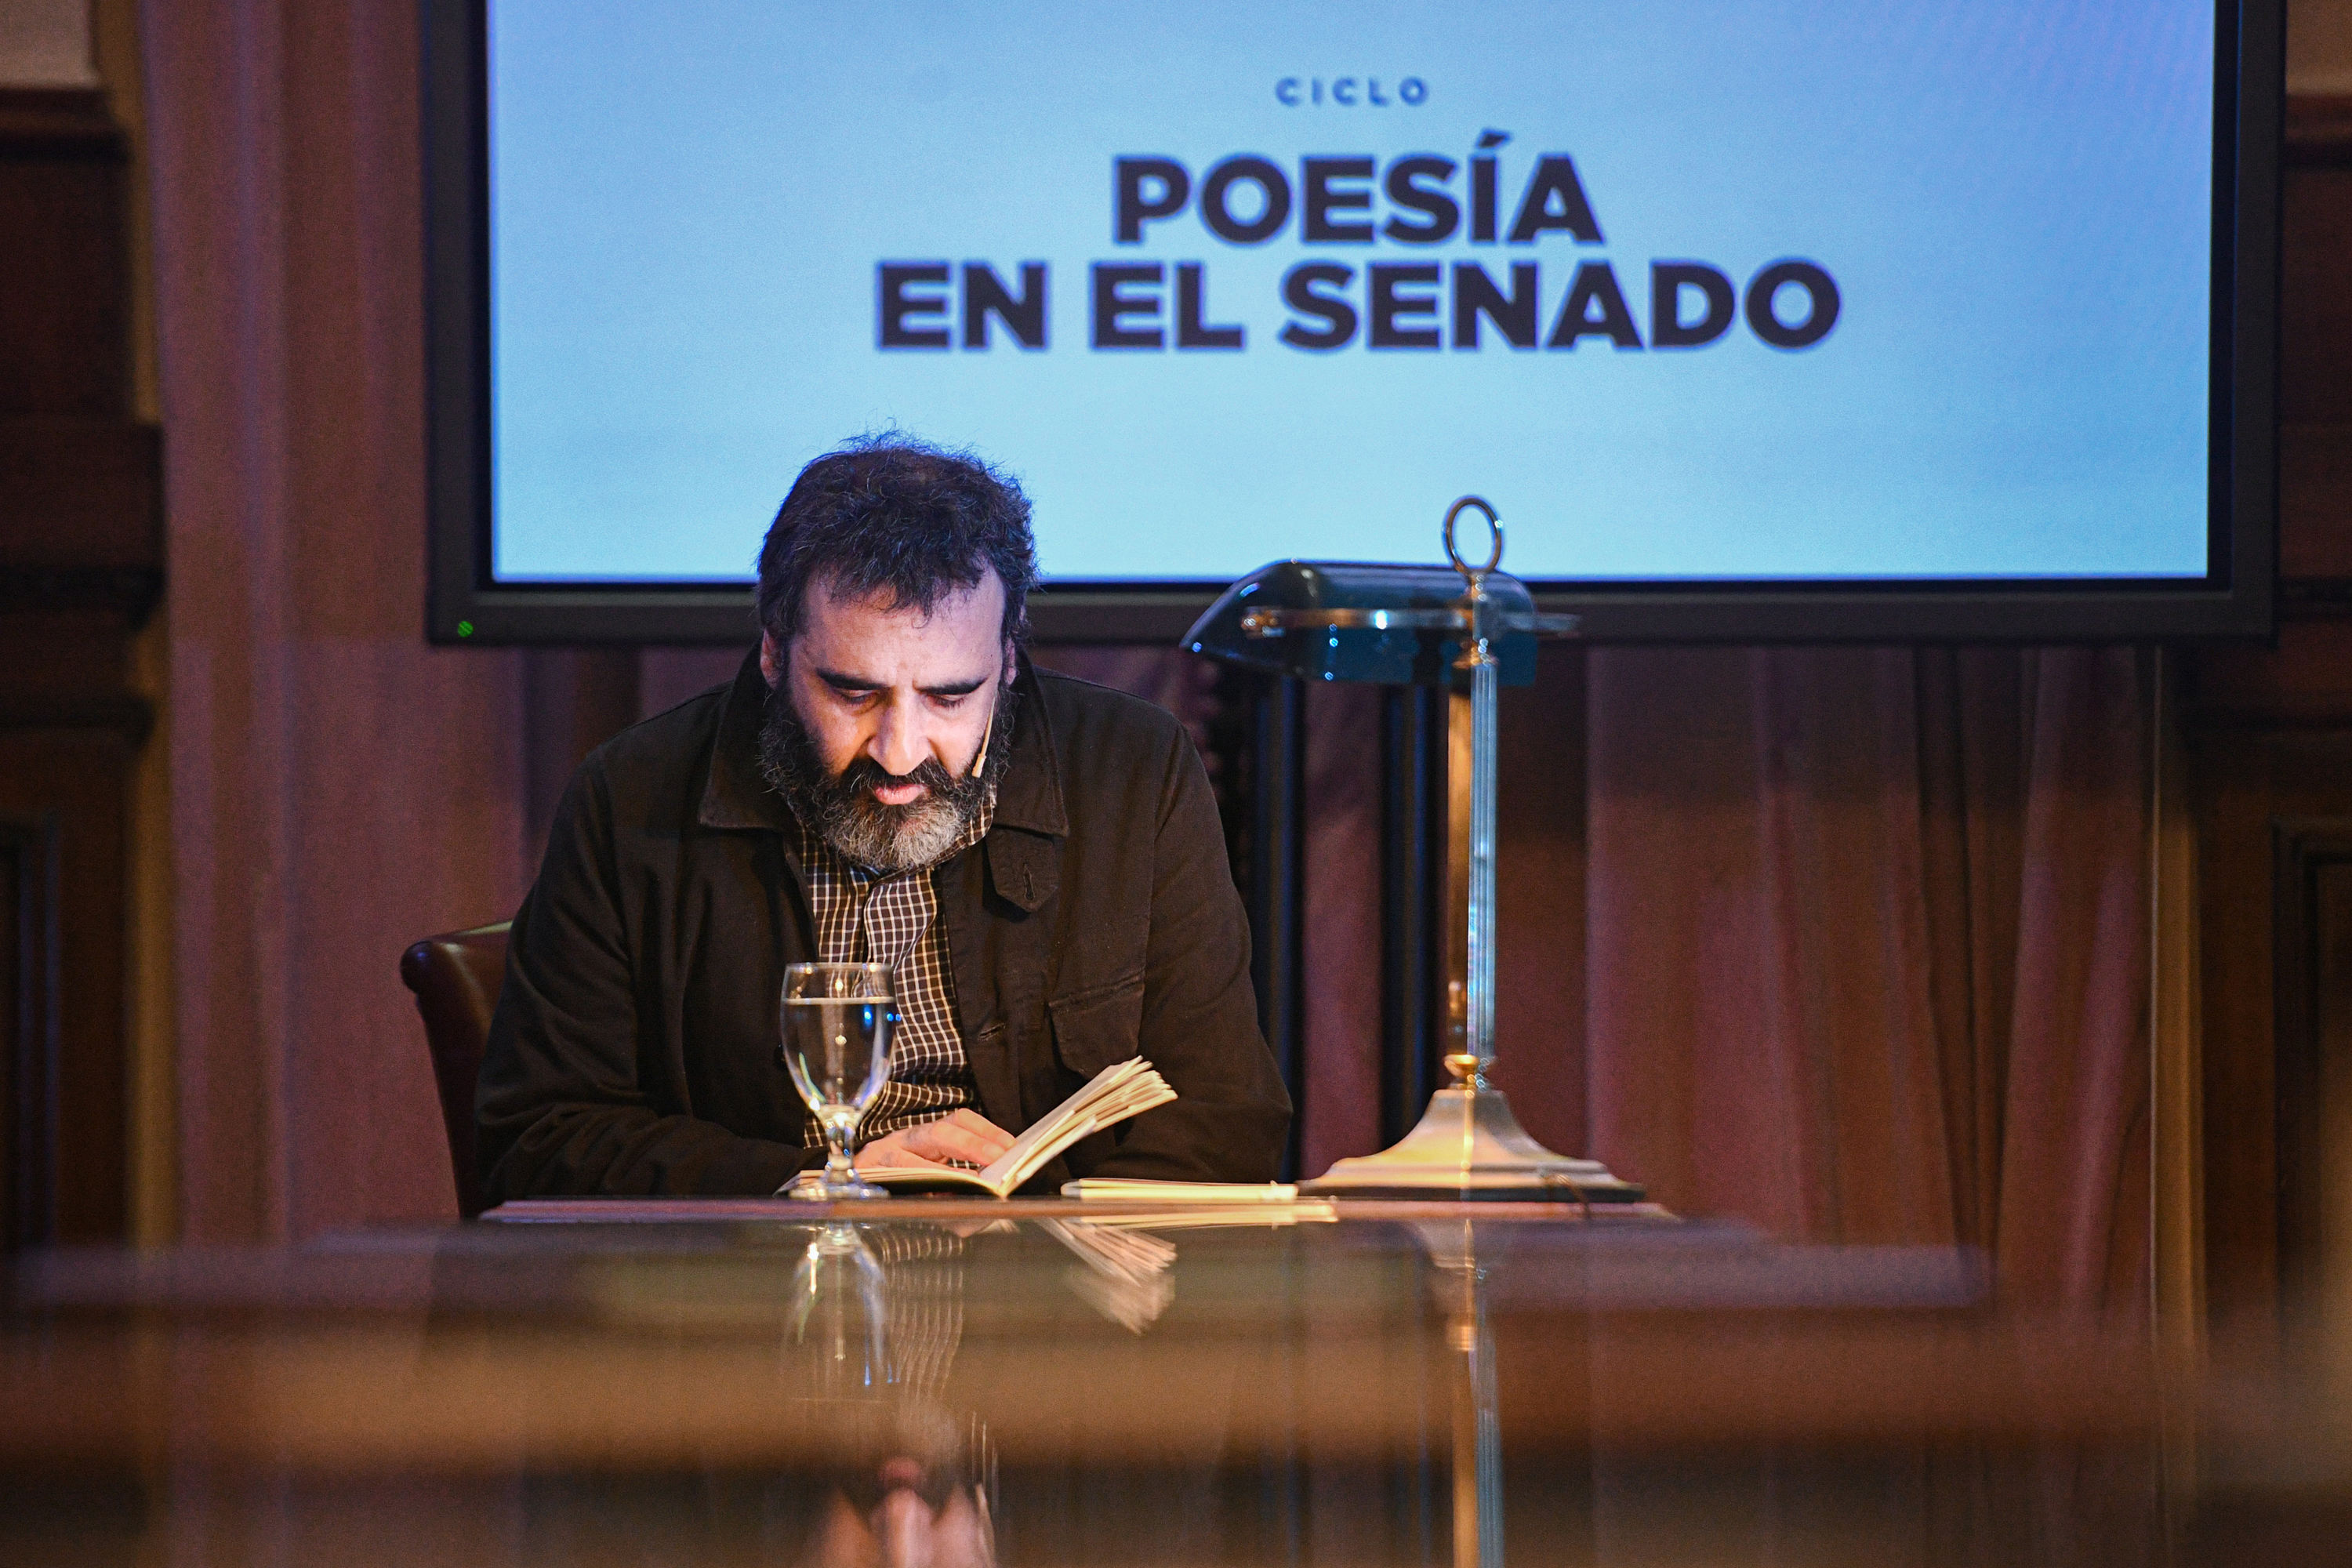 Ciclo "Poesía en el Senado" Foto: Gabriel Cano/ Co